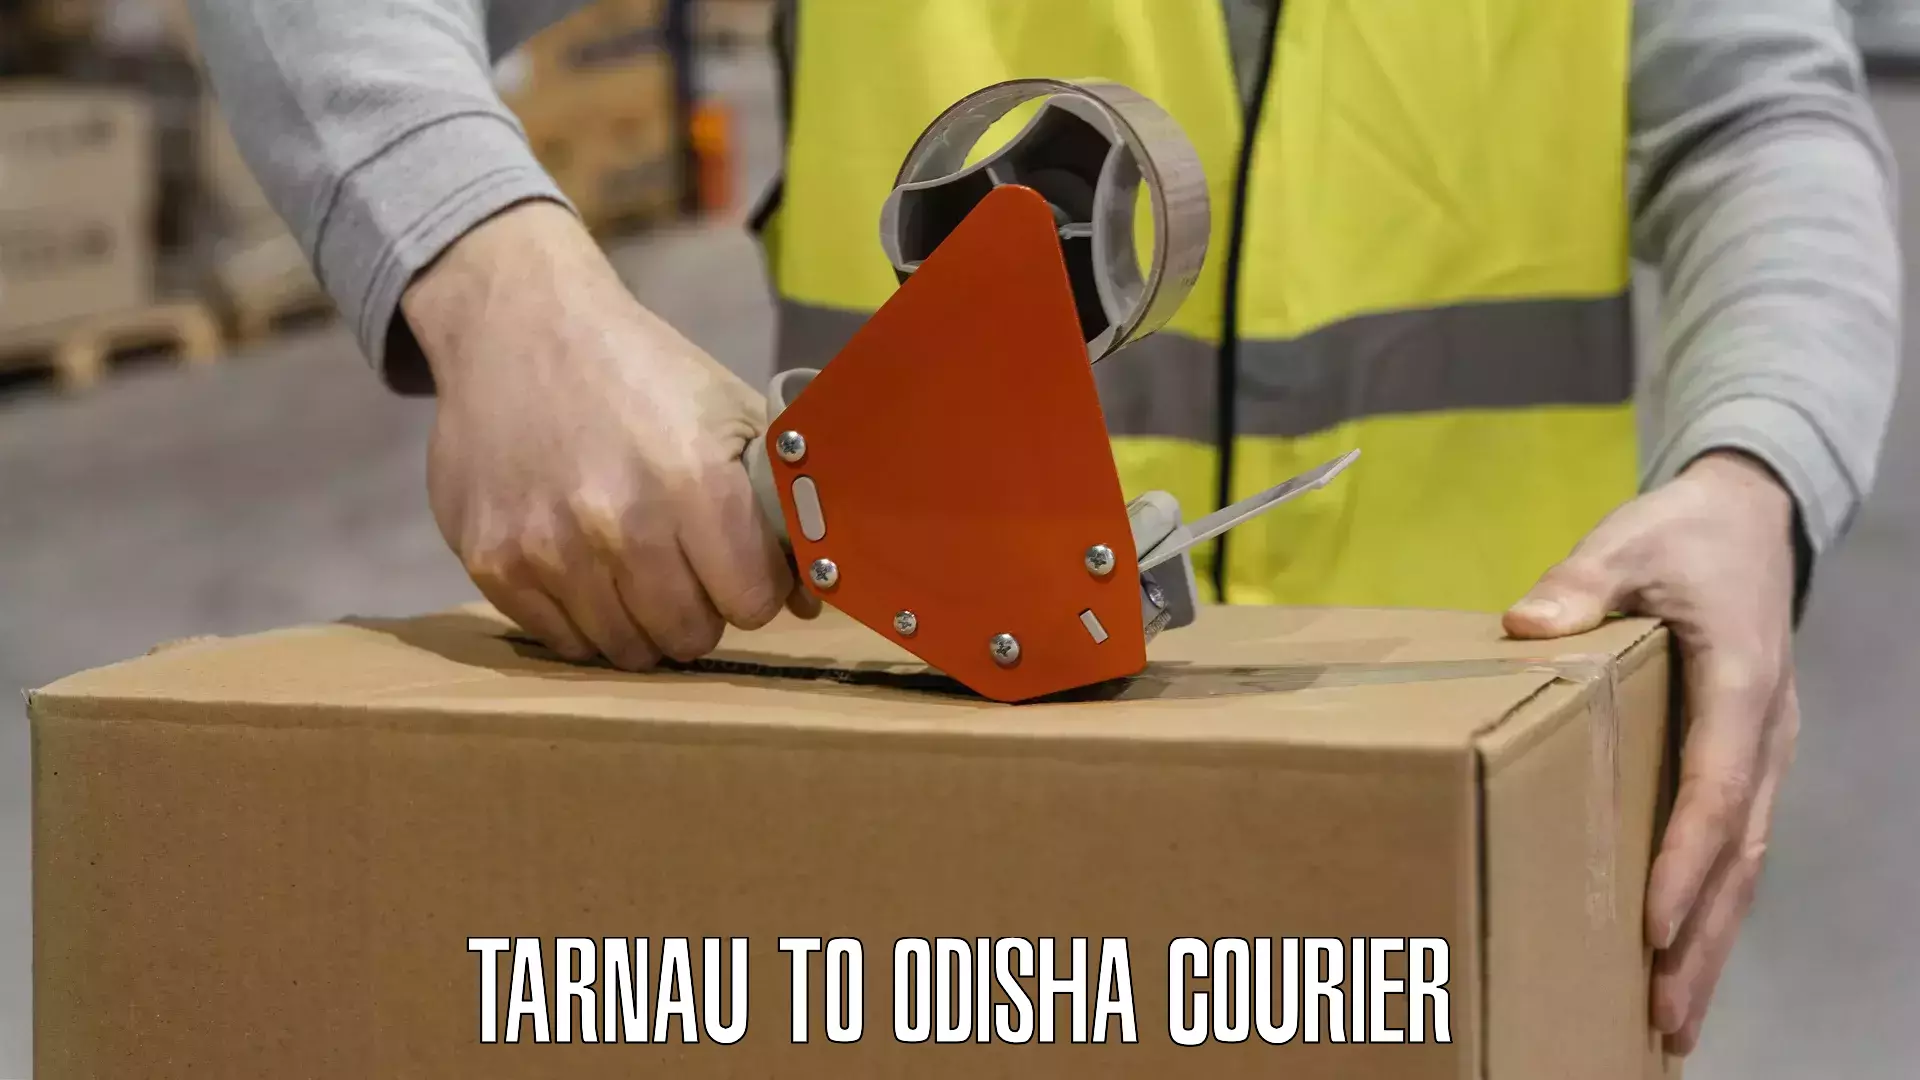 Advanced delivery network Tarnau to Odisha